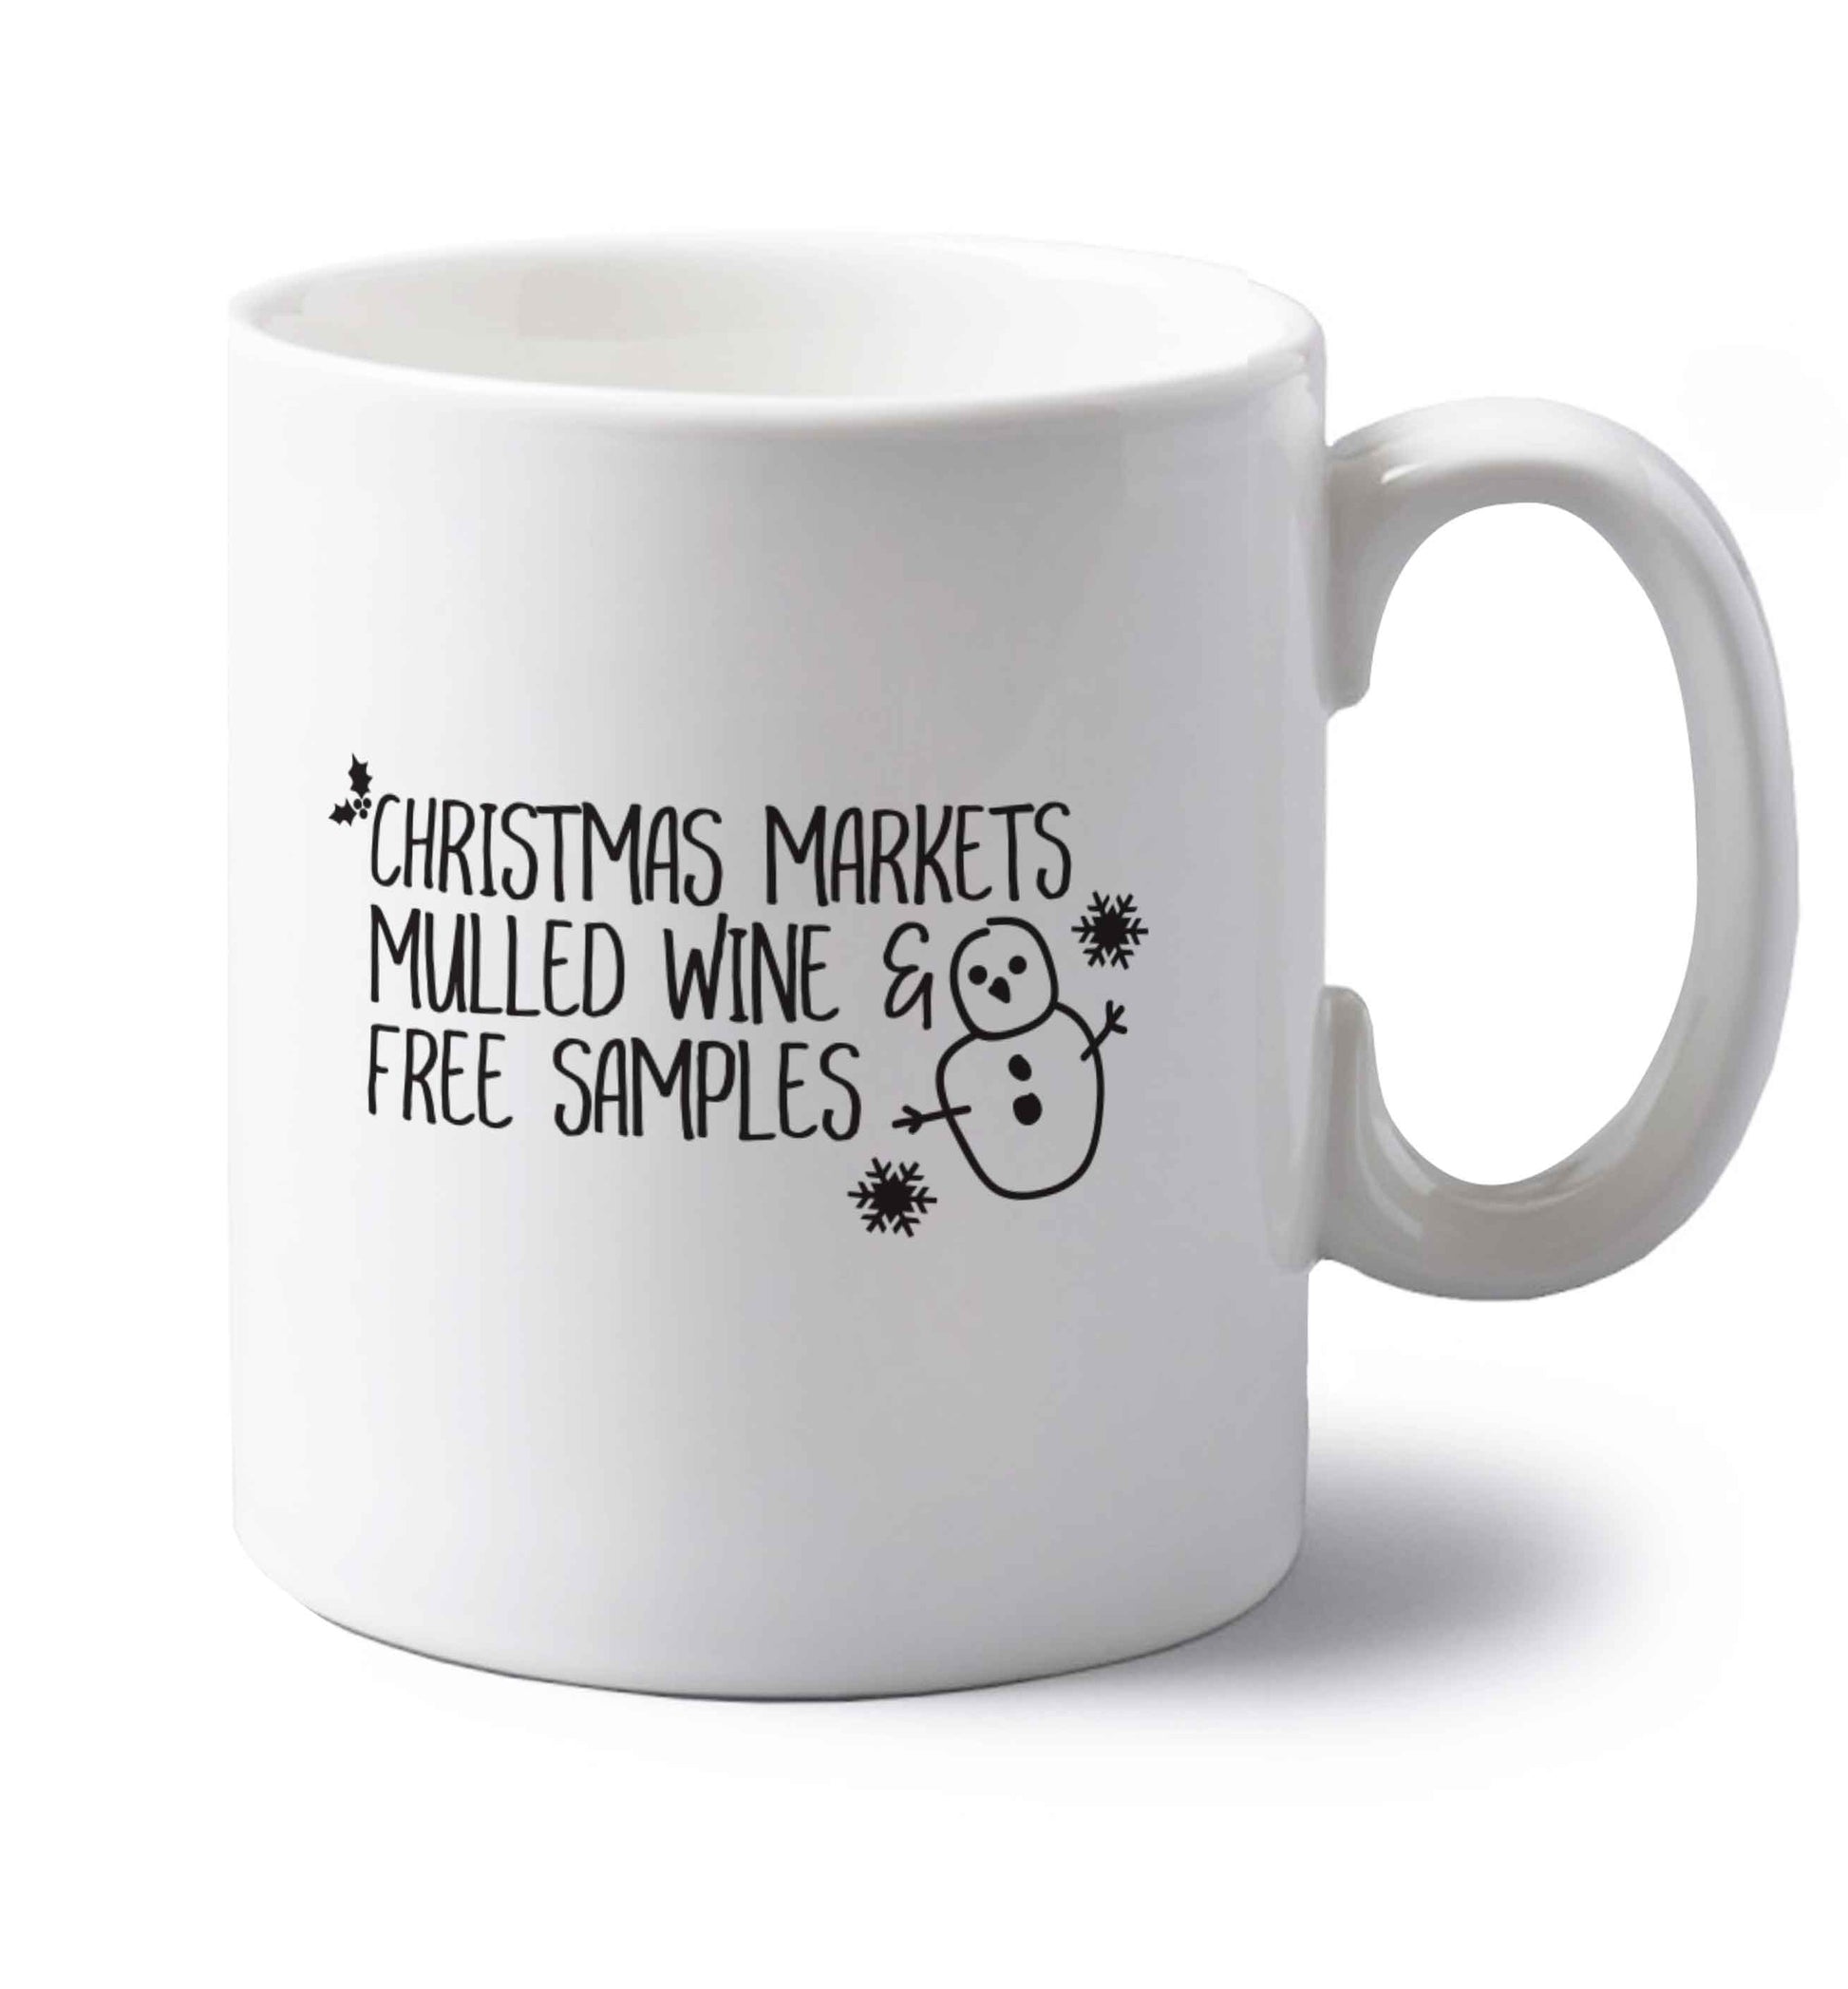 Christmas market mulled wine & free samples left handed white ceramic mug 